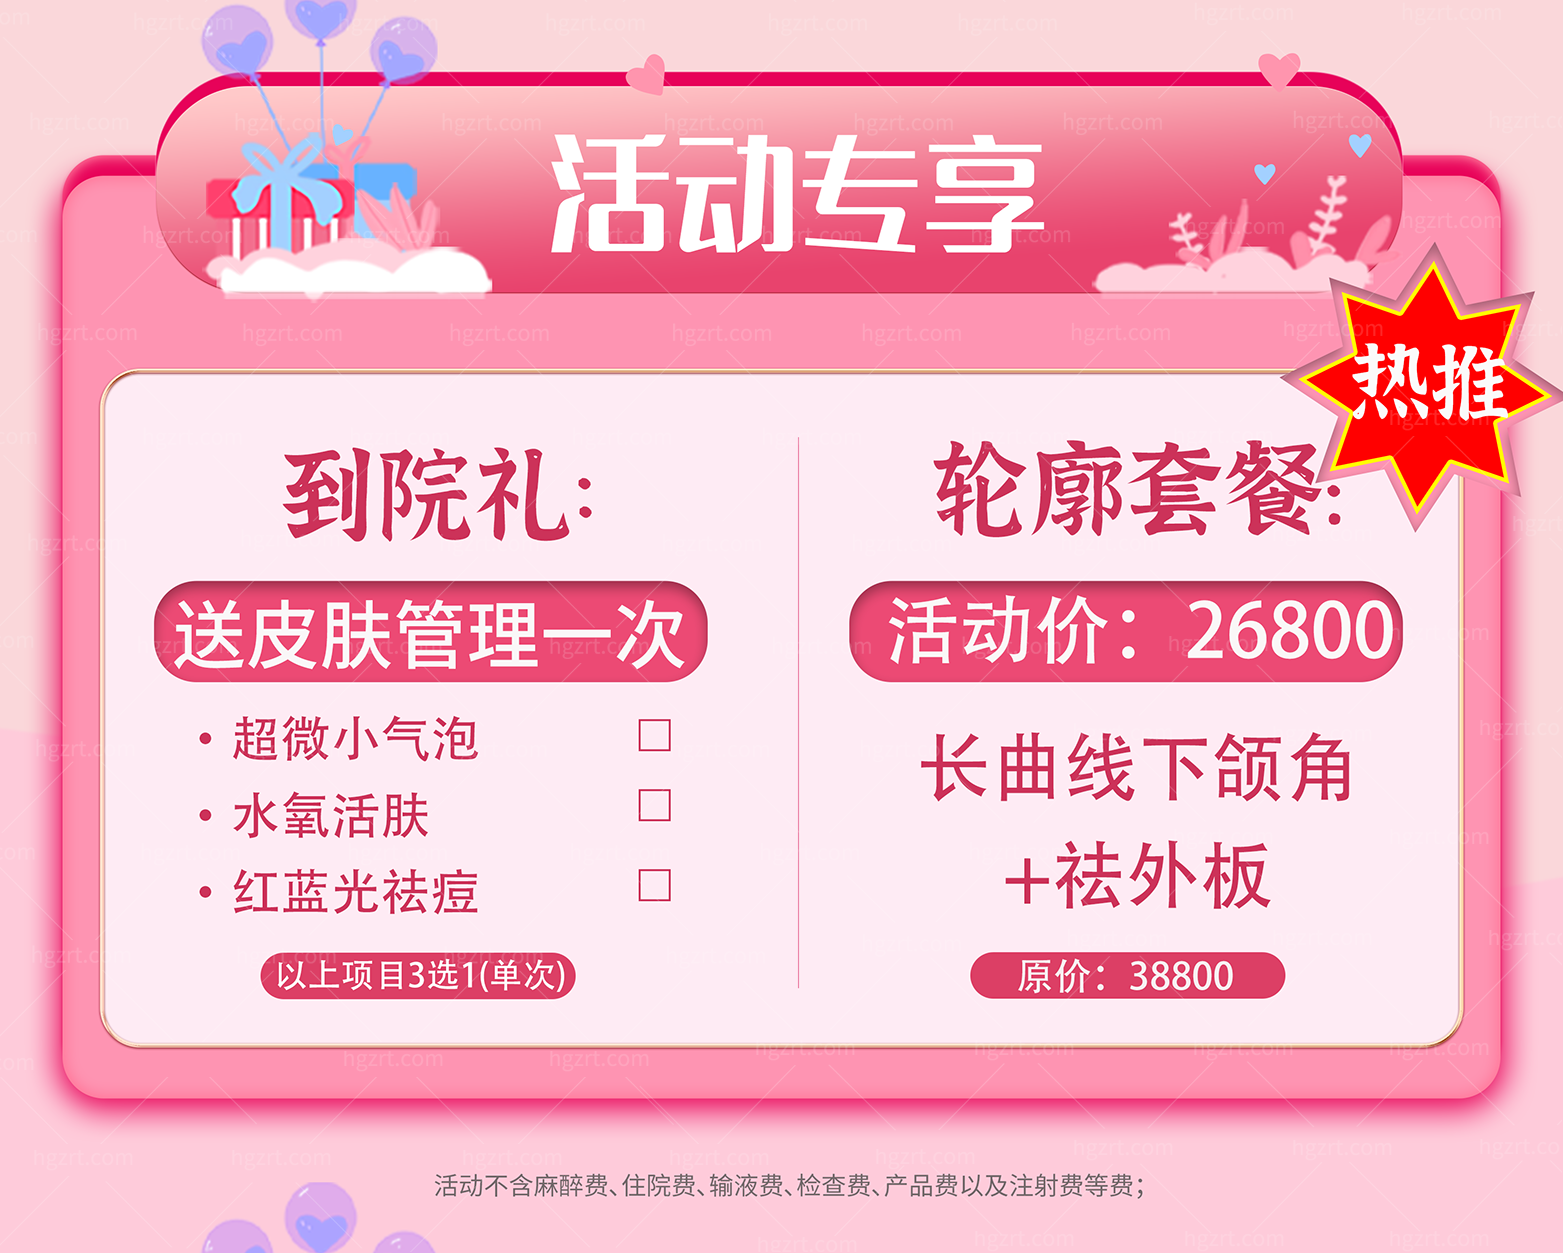 终于下手了！姐妹们14800在重庆北部宽仁医院做了鼻综合